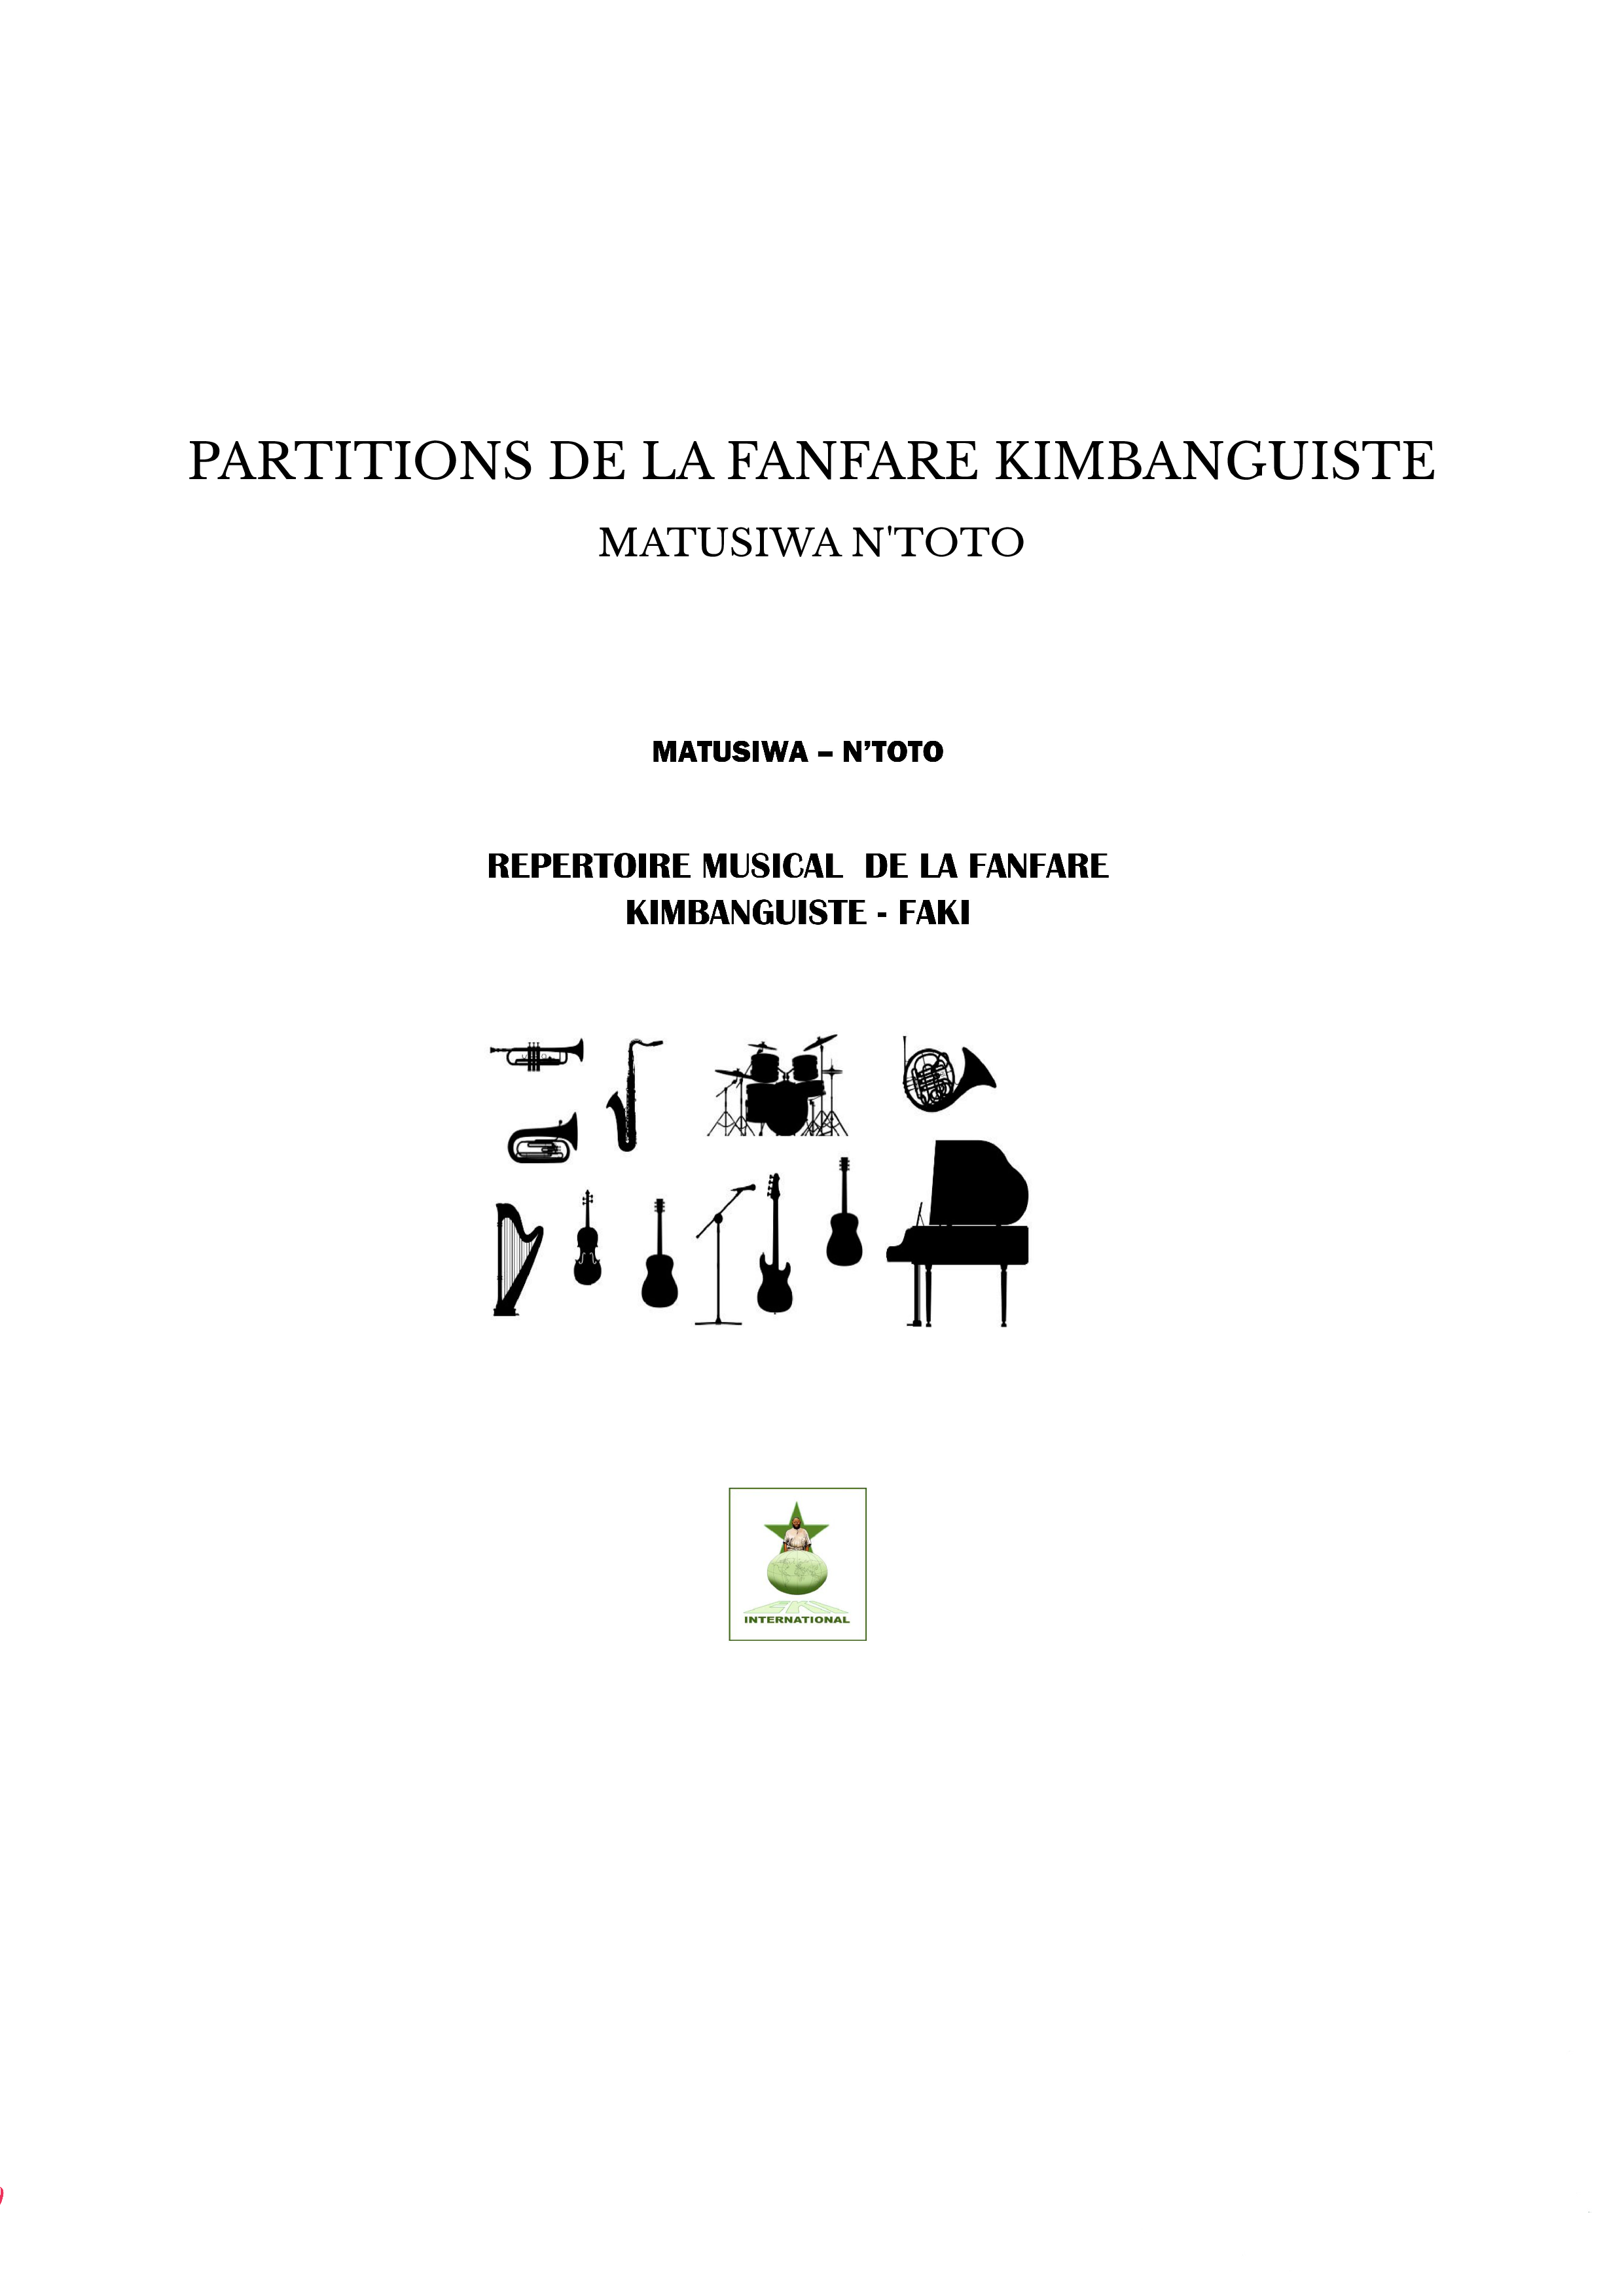 PARTITIONS DE LA FANFARE KIMBANGUISTE